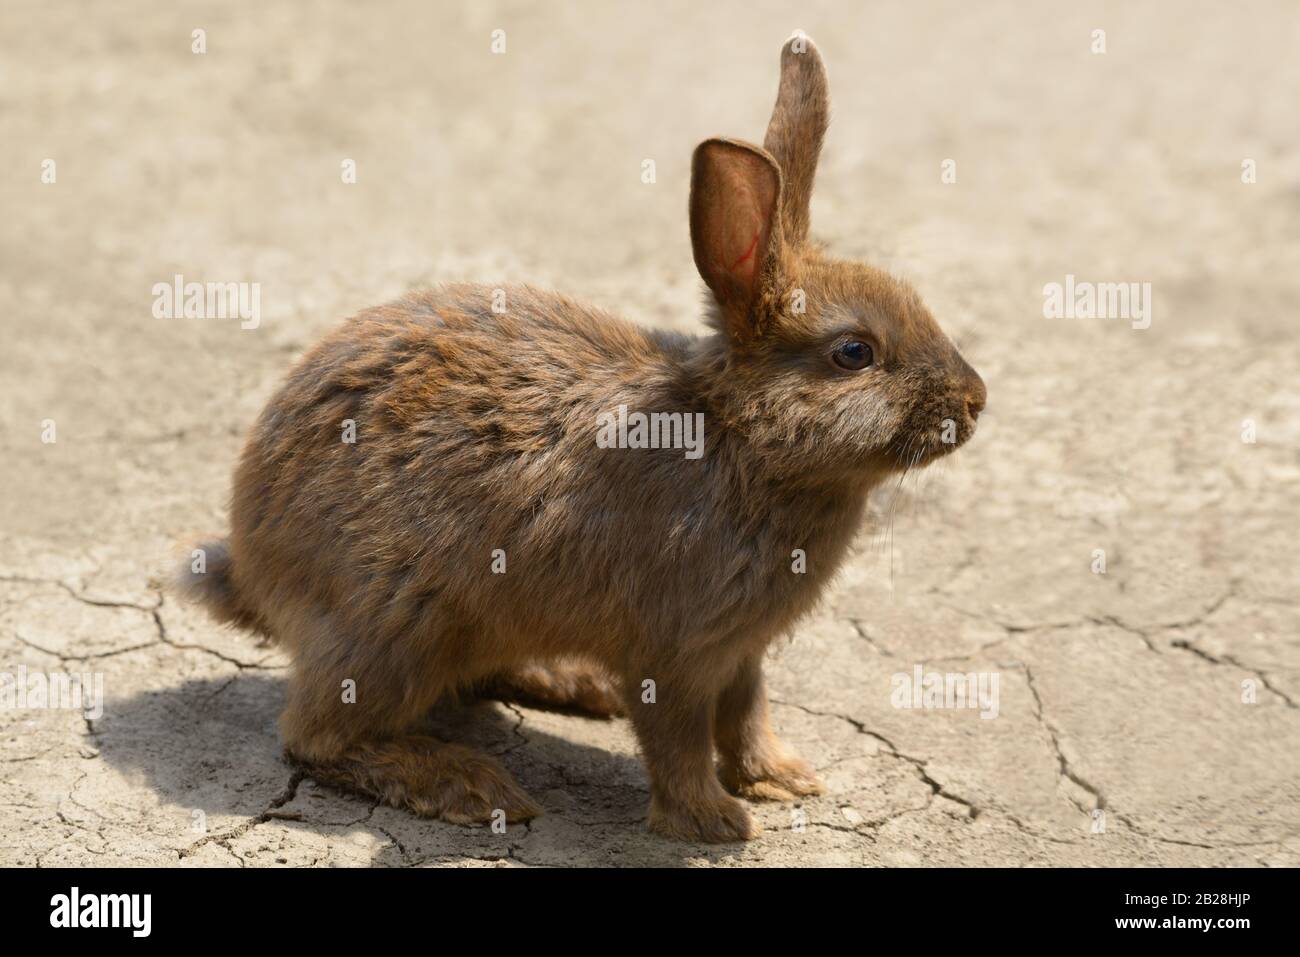 Niedliche braune Kaninchen / Hase / auf rissigen ländlichen Boden Schmutz, Nahaufnahme Stockfoto